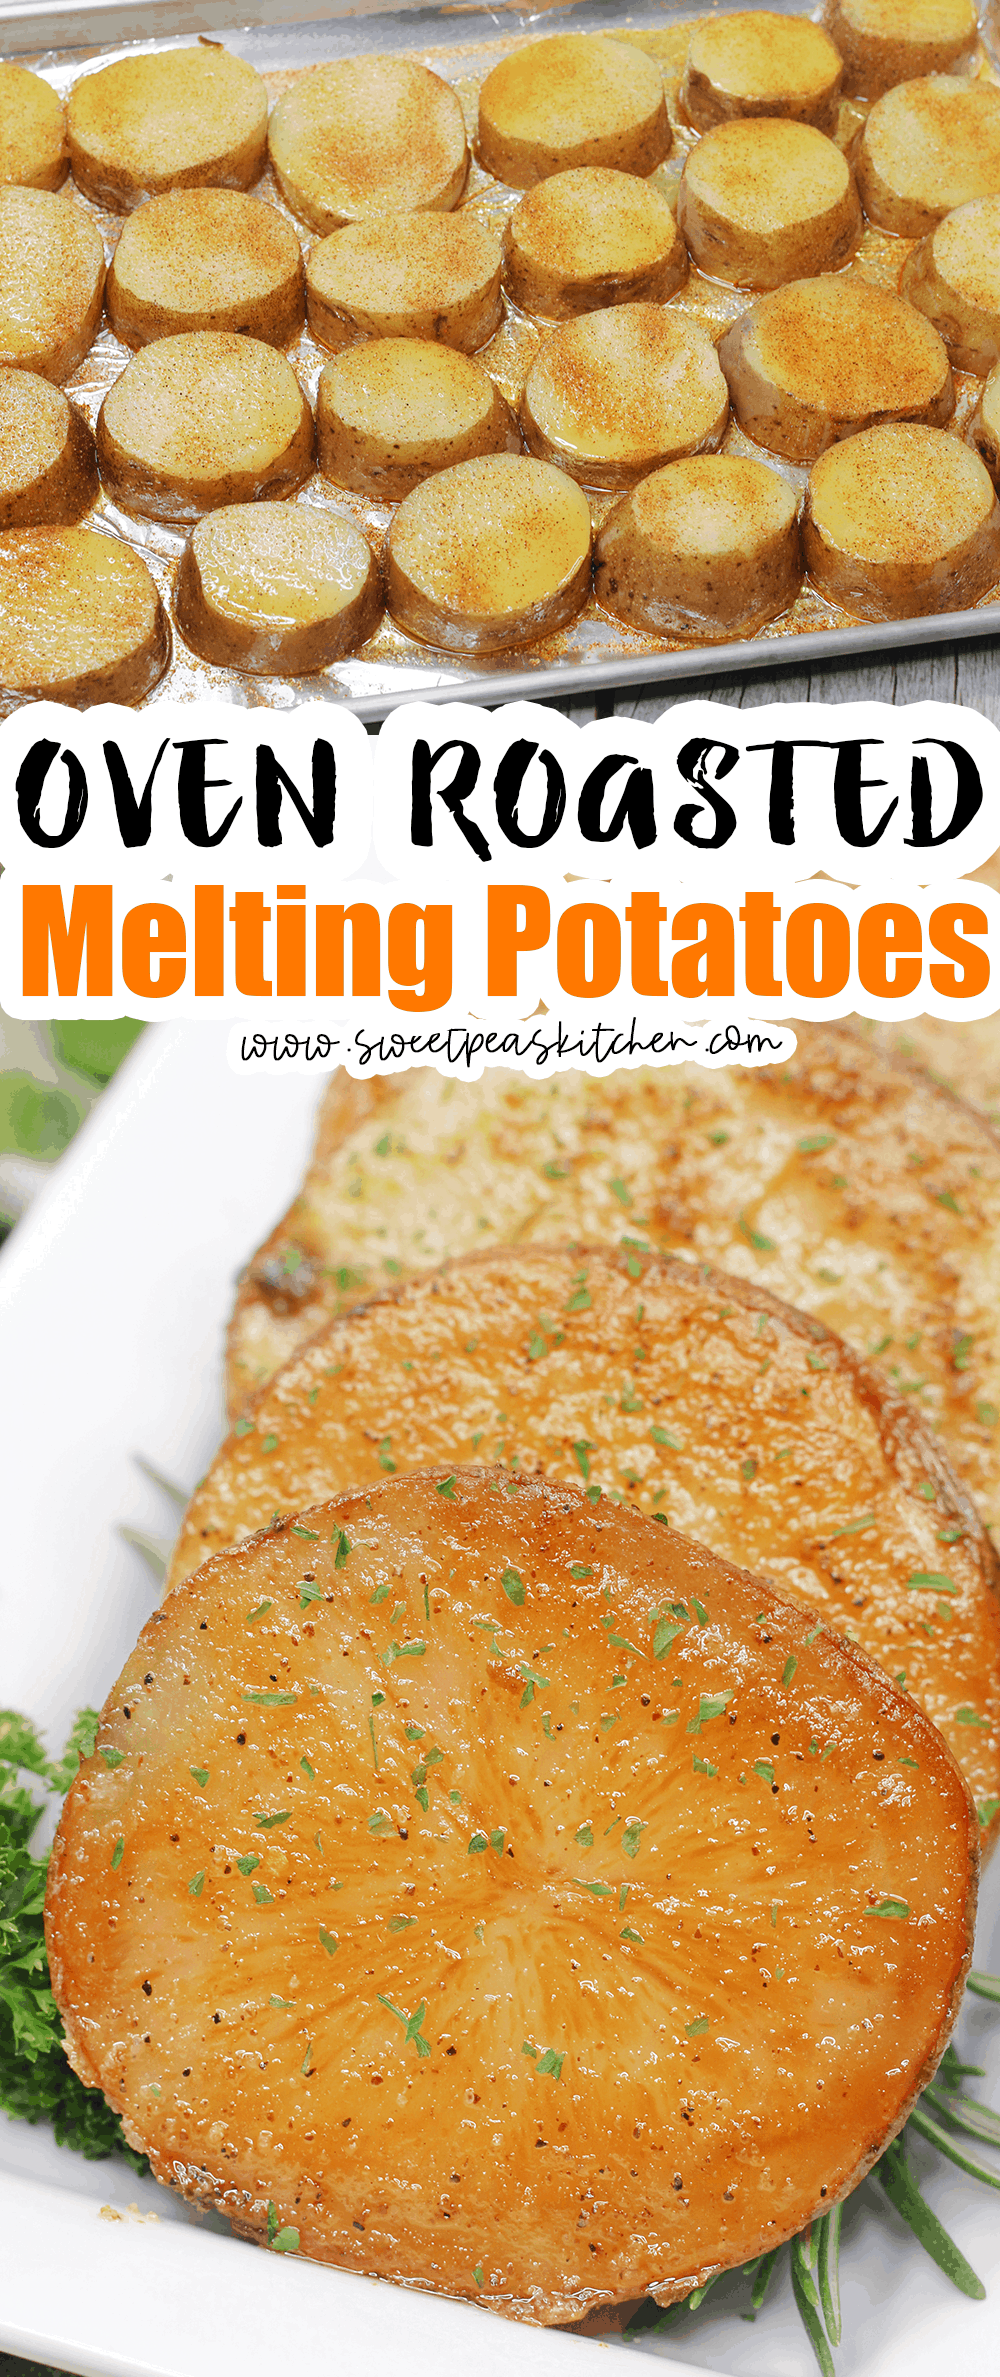 Oven Roasted Melting Potatoes